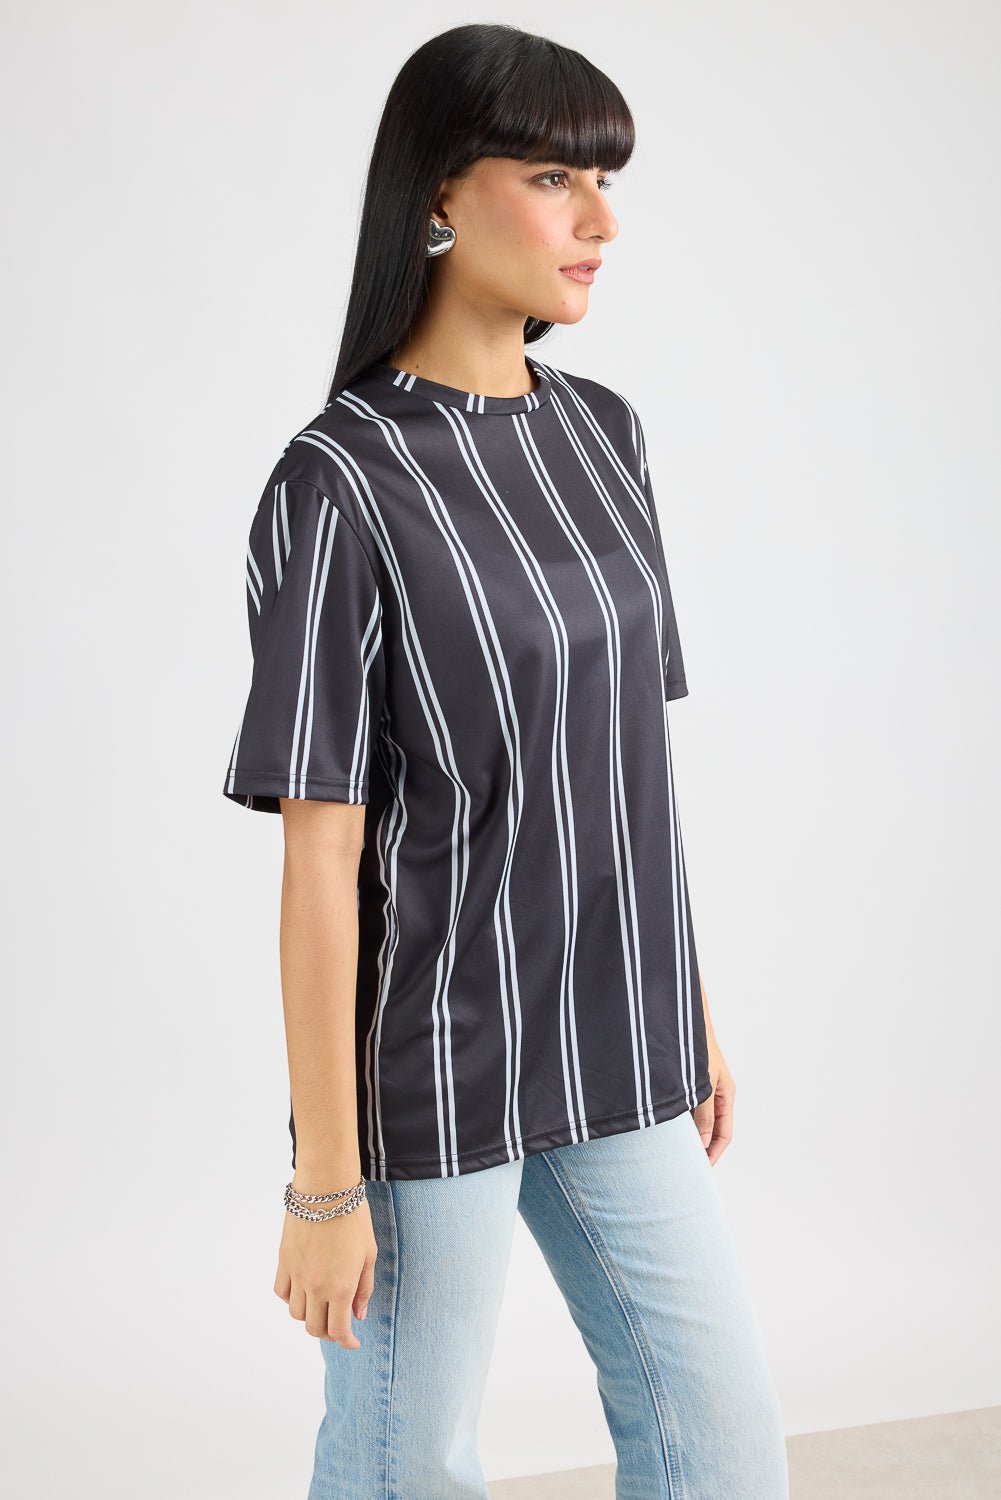 AOP Women's T-shirt - Black/White Stripes